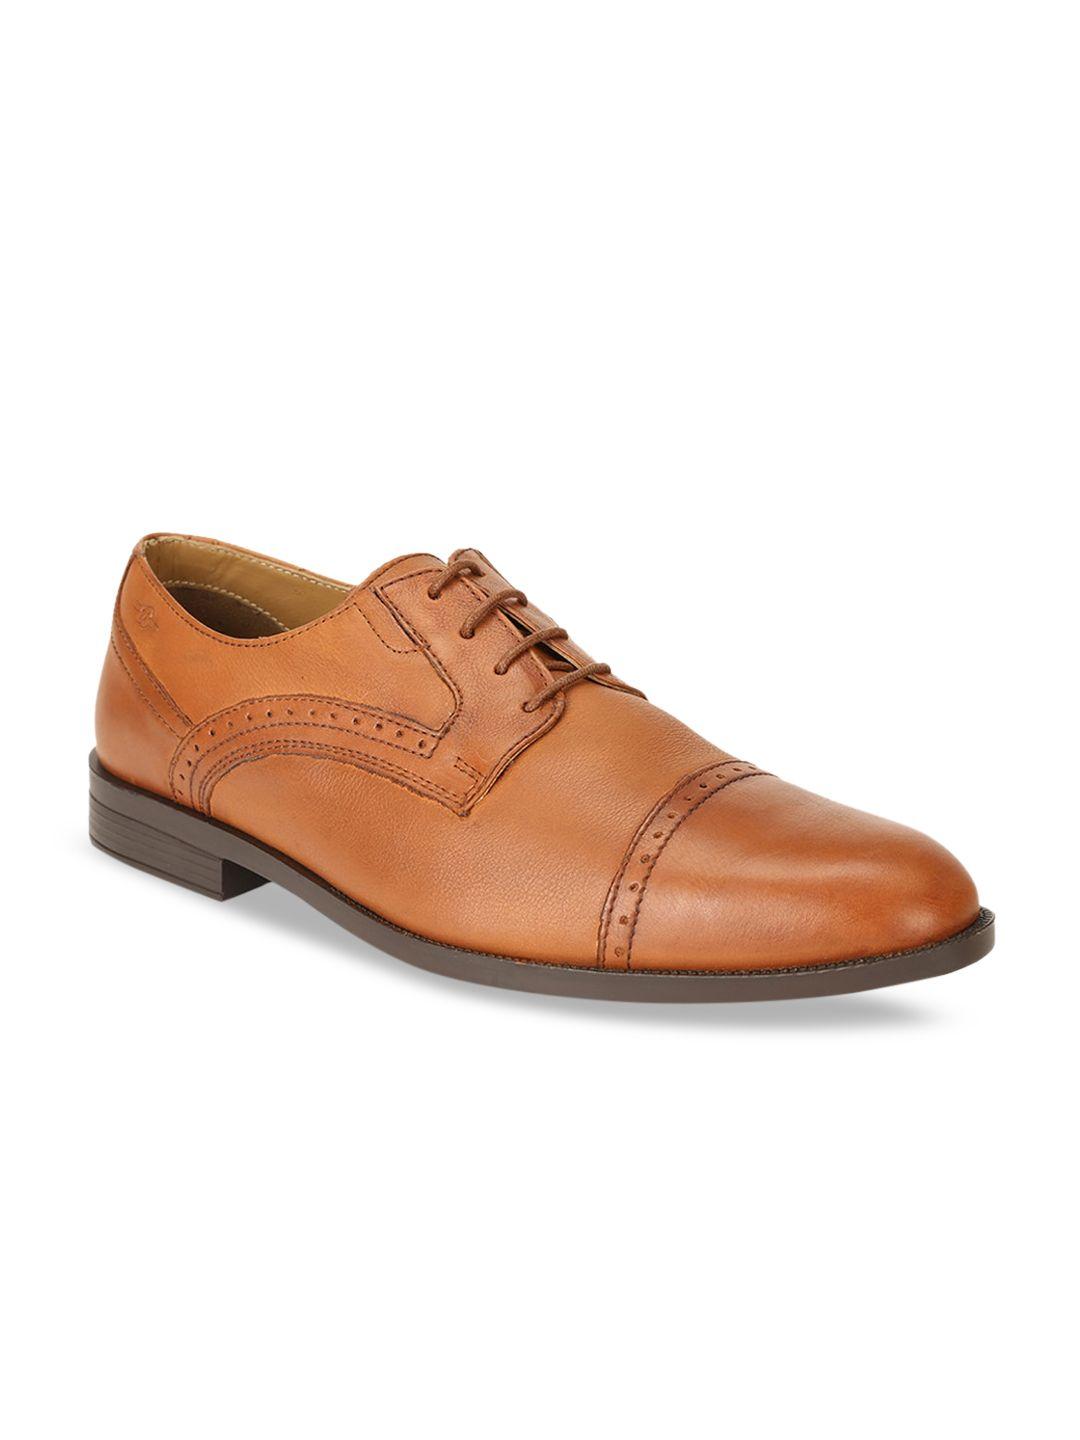 bata-men-brown-solid-leather-formal-derbys